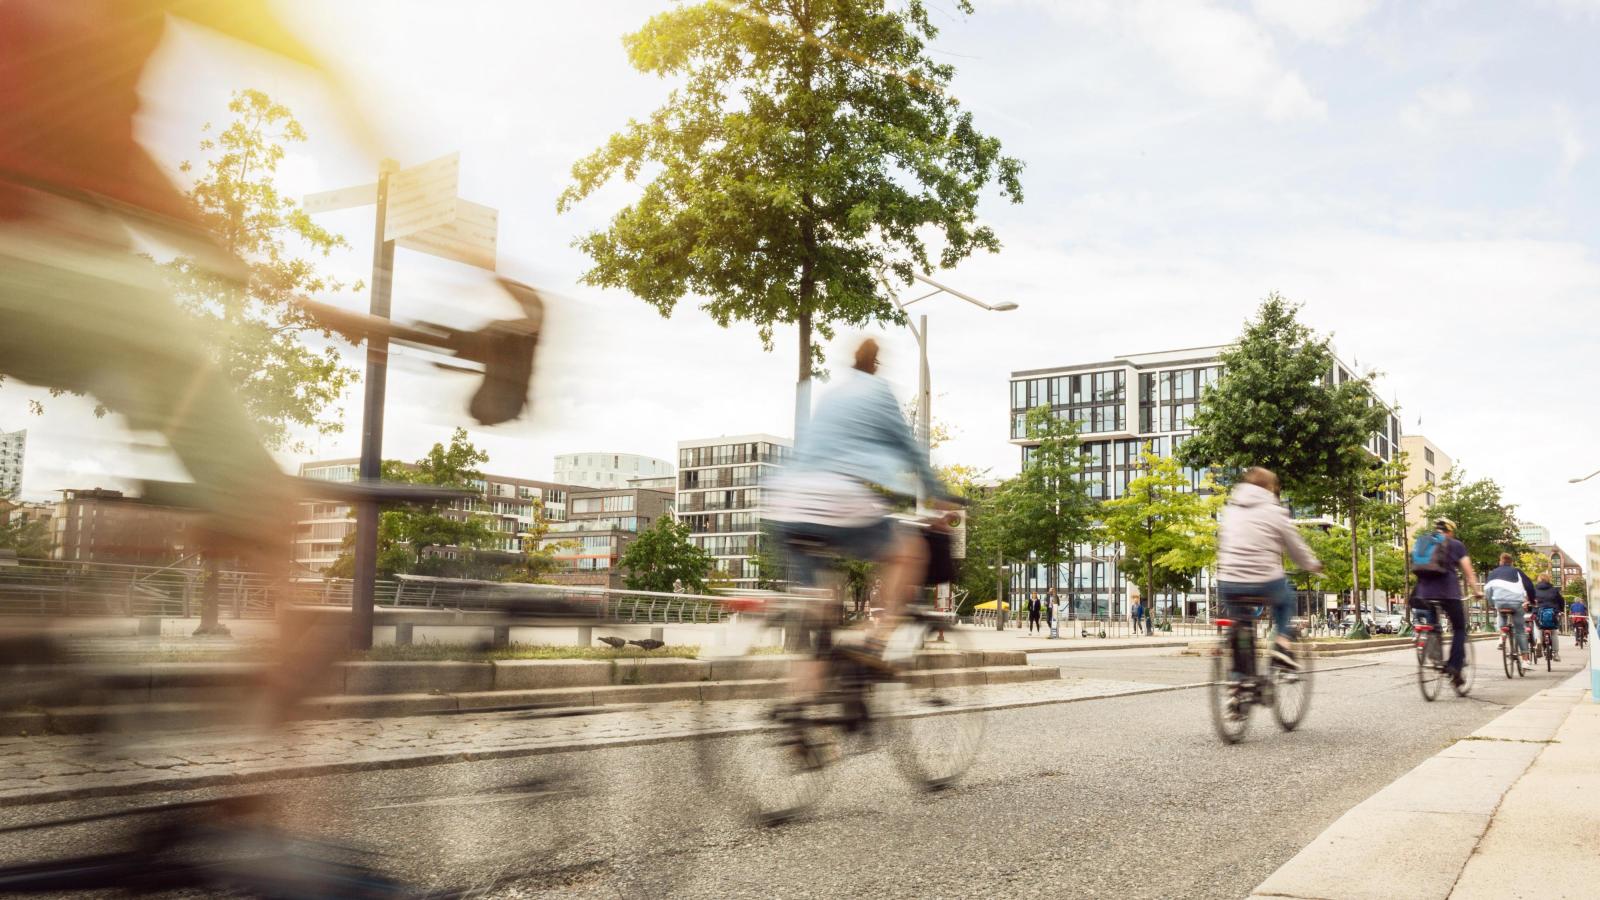 Fahrradfahrende in einer Stadt mit grünen Bäumen und modernen Gebäuden